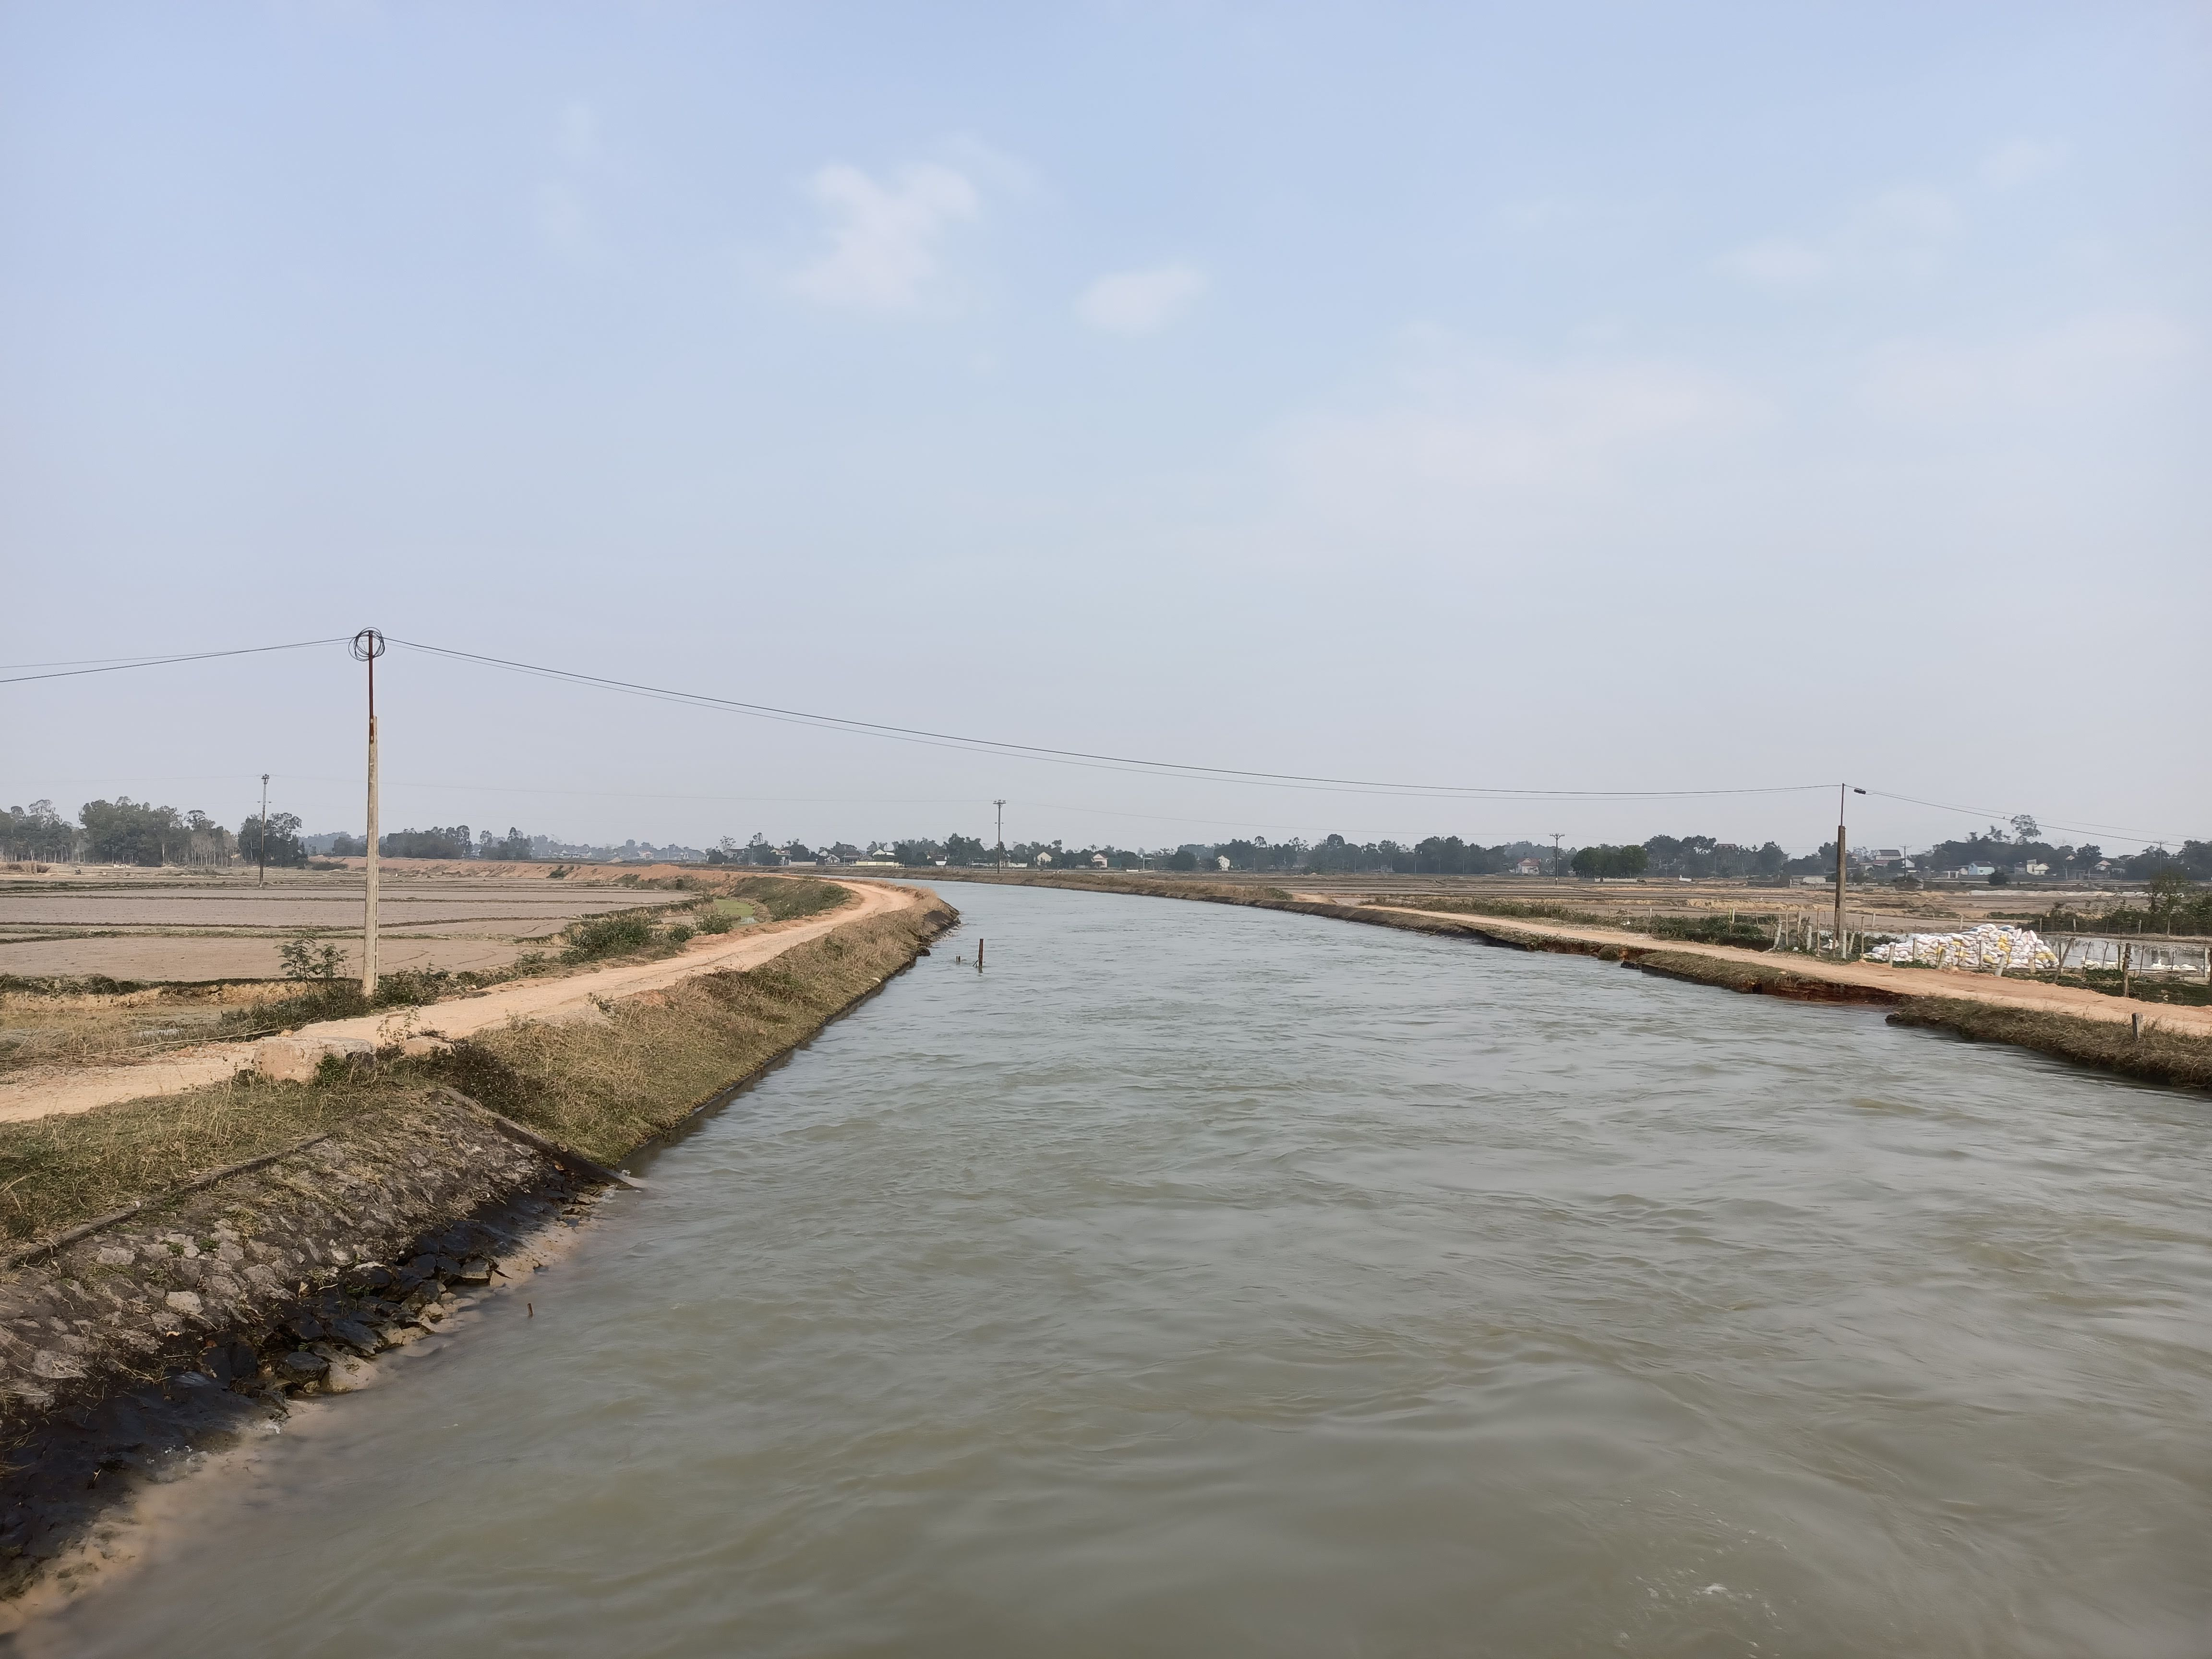 Sau khi lấy nước từ Bara Đô Lương, sông Đào chảy xuống các huyện Yên Thành, Diễn Châu, Quỳnh Lưu, theo thiết kế lưu lượng nước đổ về đạt 30m3/s. Ảnh: Tiến Đông